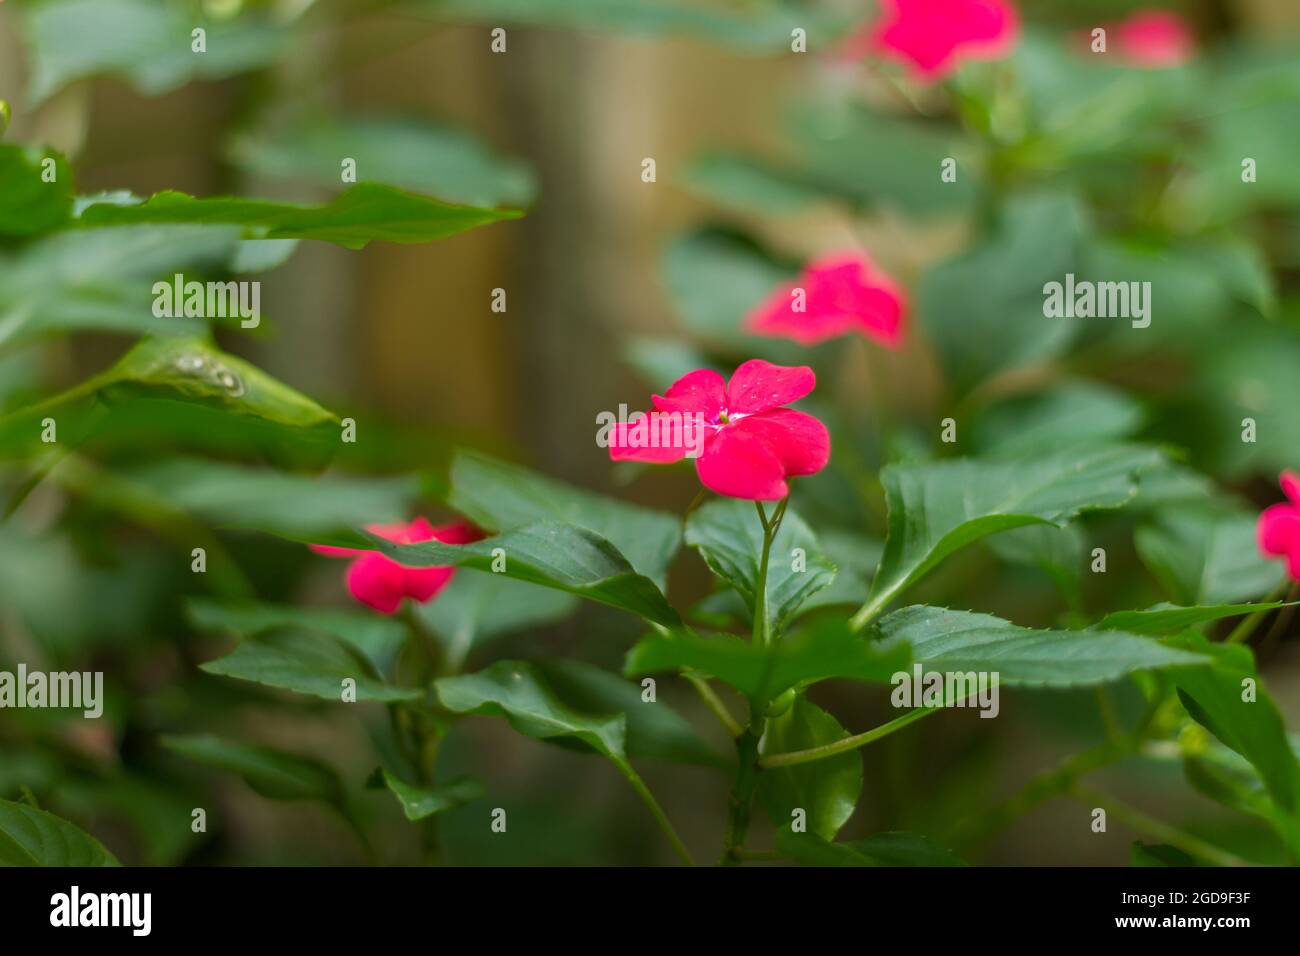 Impatiens balsamina, comunemente noto come balsamo, balsamo giardino, balsamo rosa, touch-me-non o avvistato dentice, è una specie di pianta originaria dell'India Foto Stock